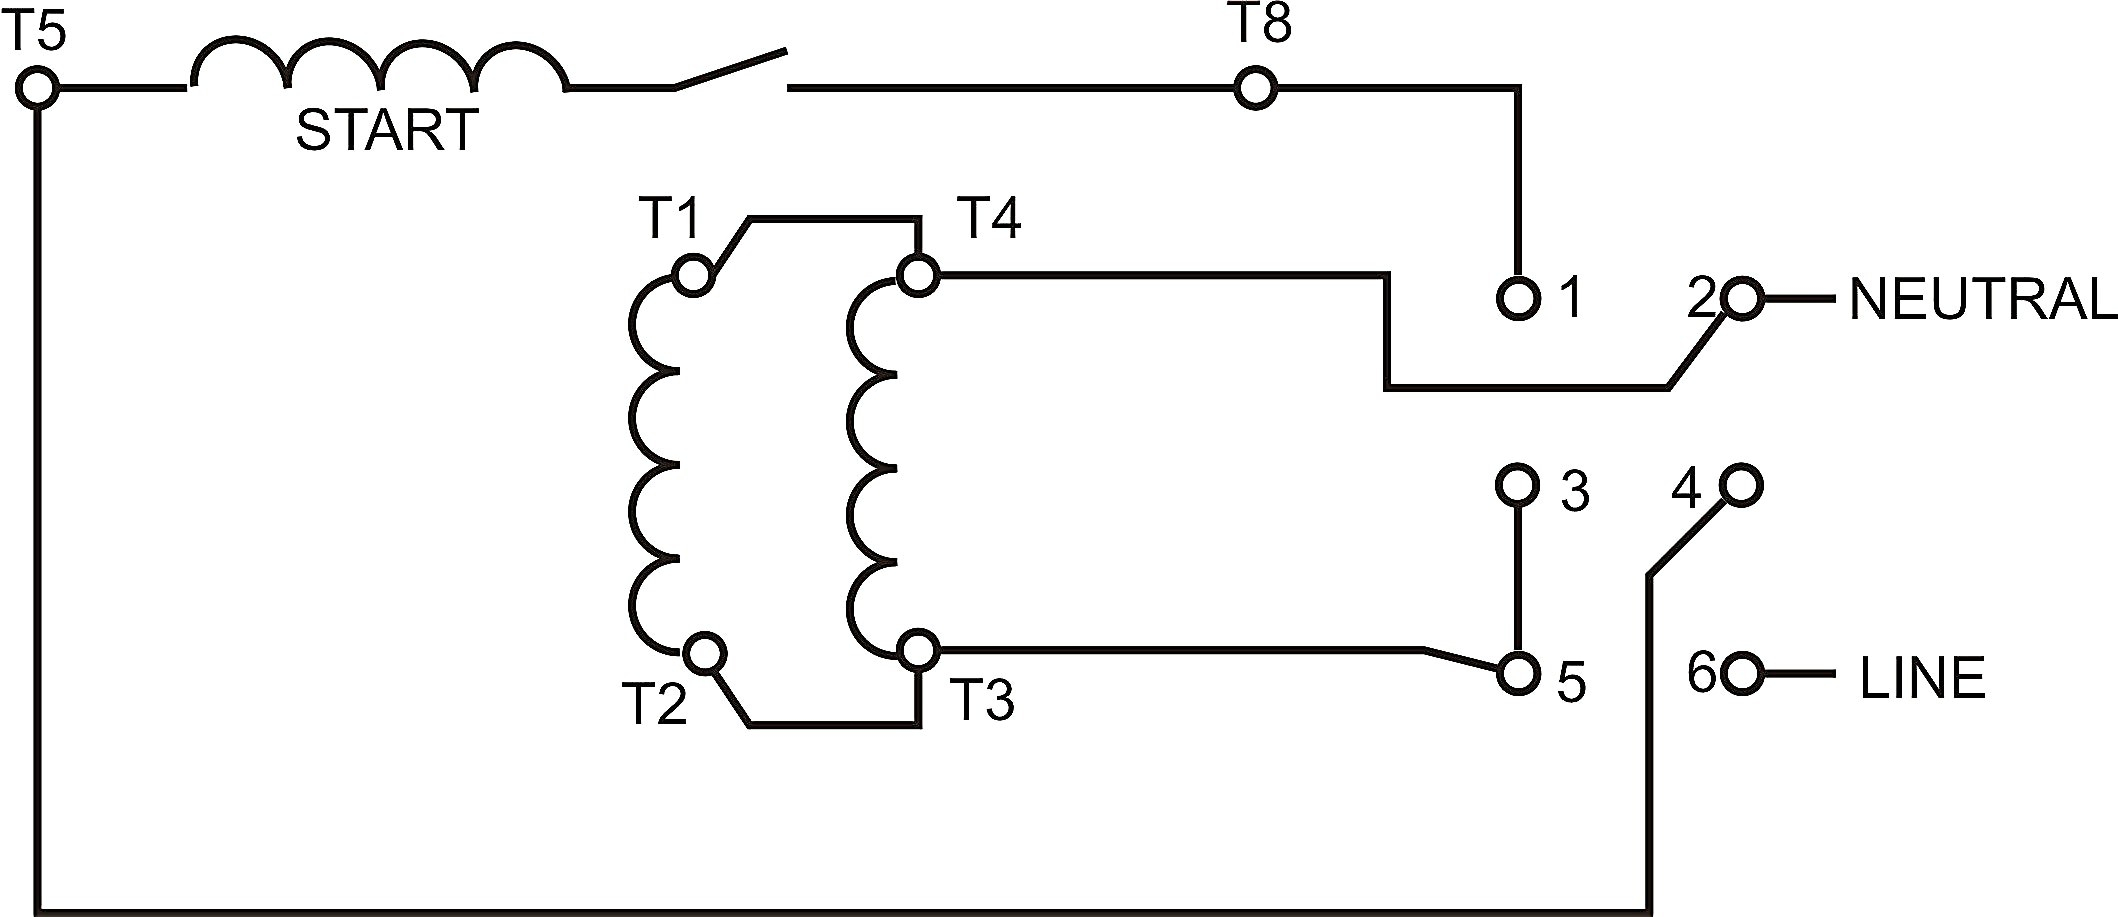 110 220 Motor Wiring Diagram | Wiring Diagram - 220 To 110 Wiring Diagram